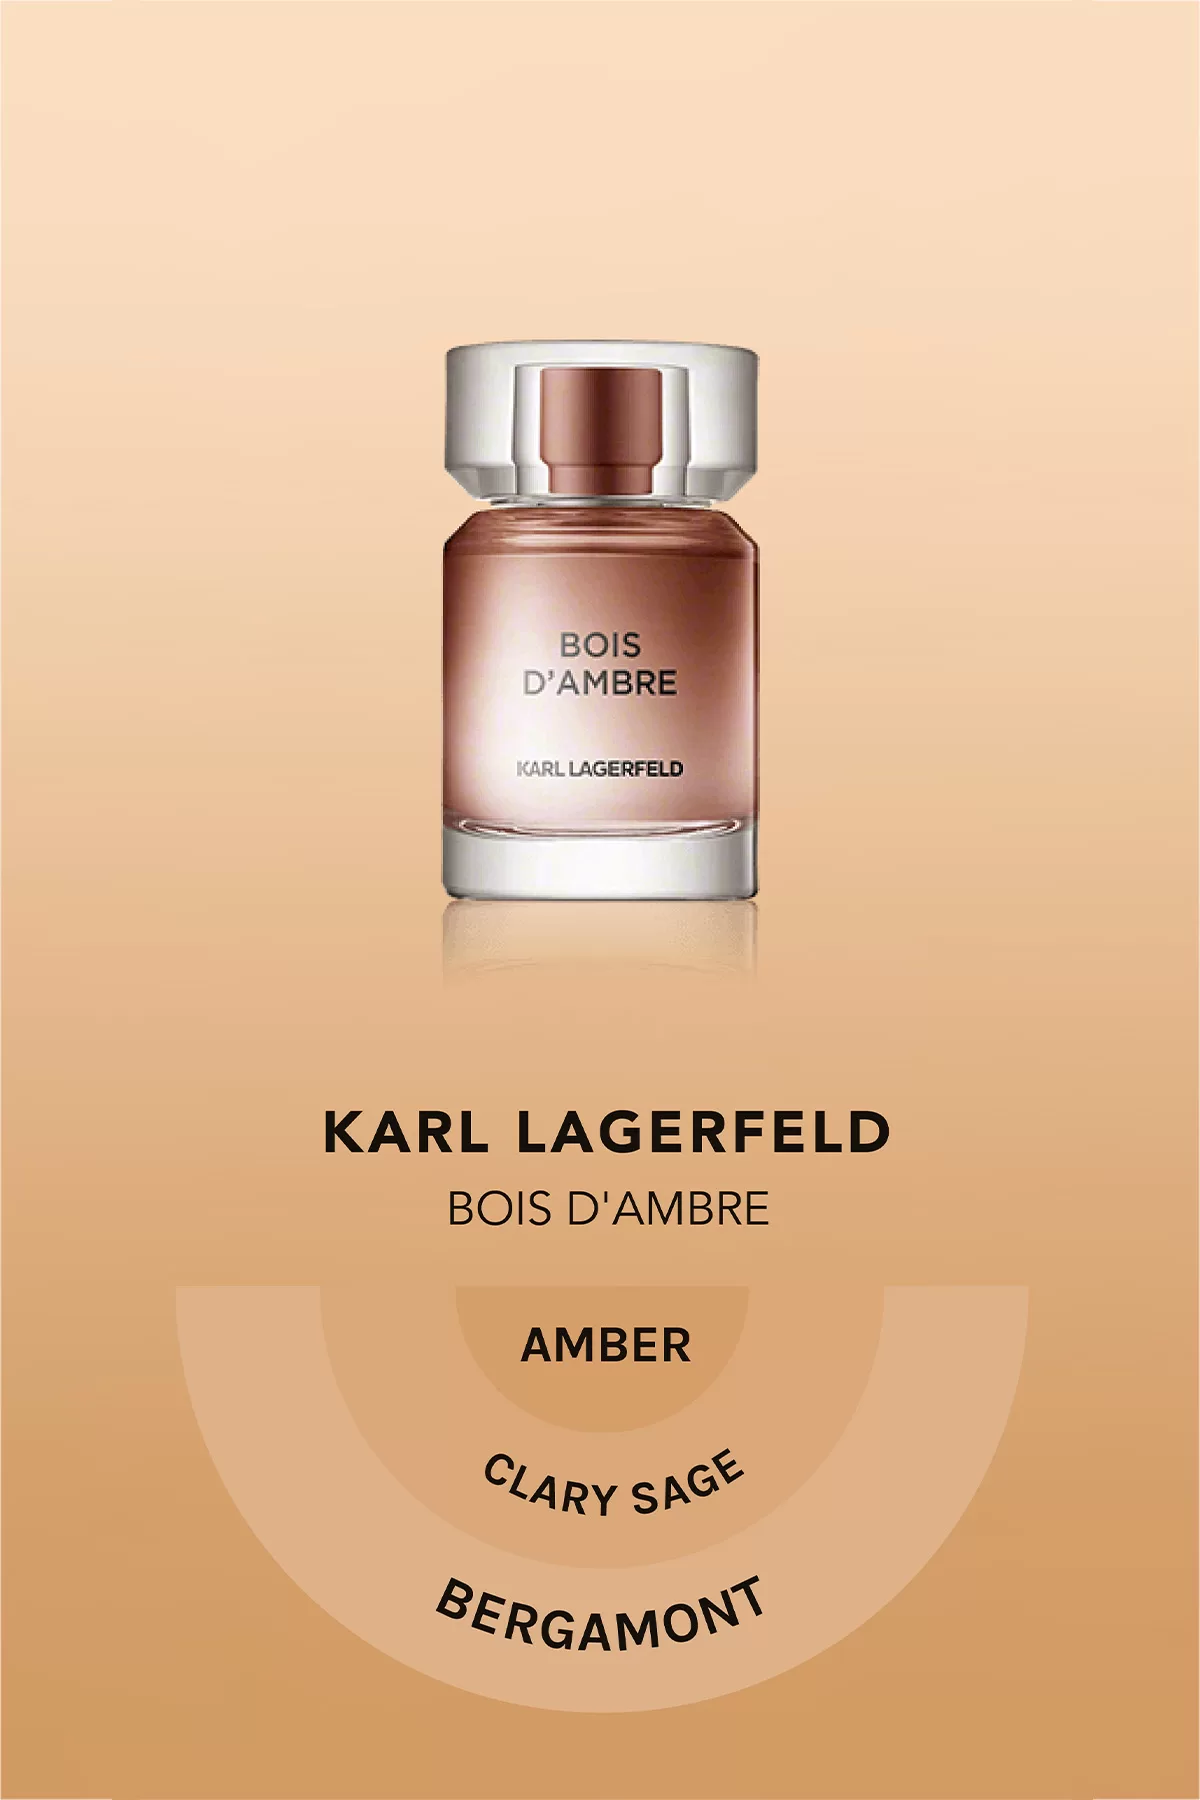 Karl Lagerfeld Bois D'Ambre